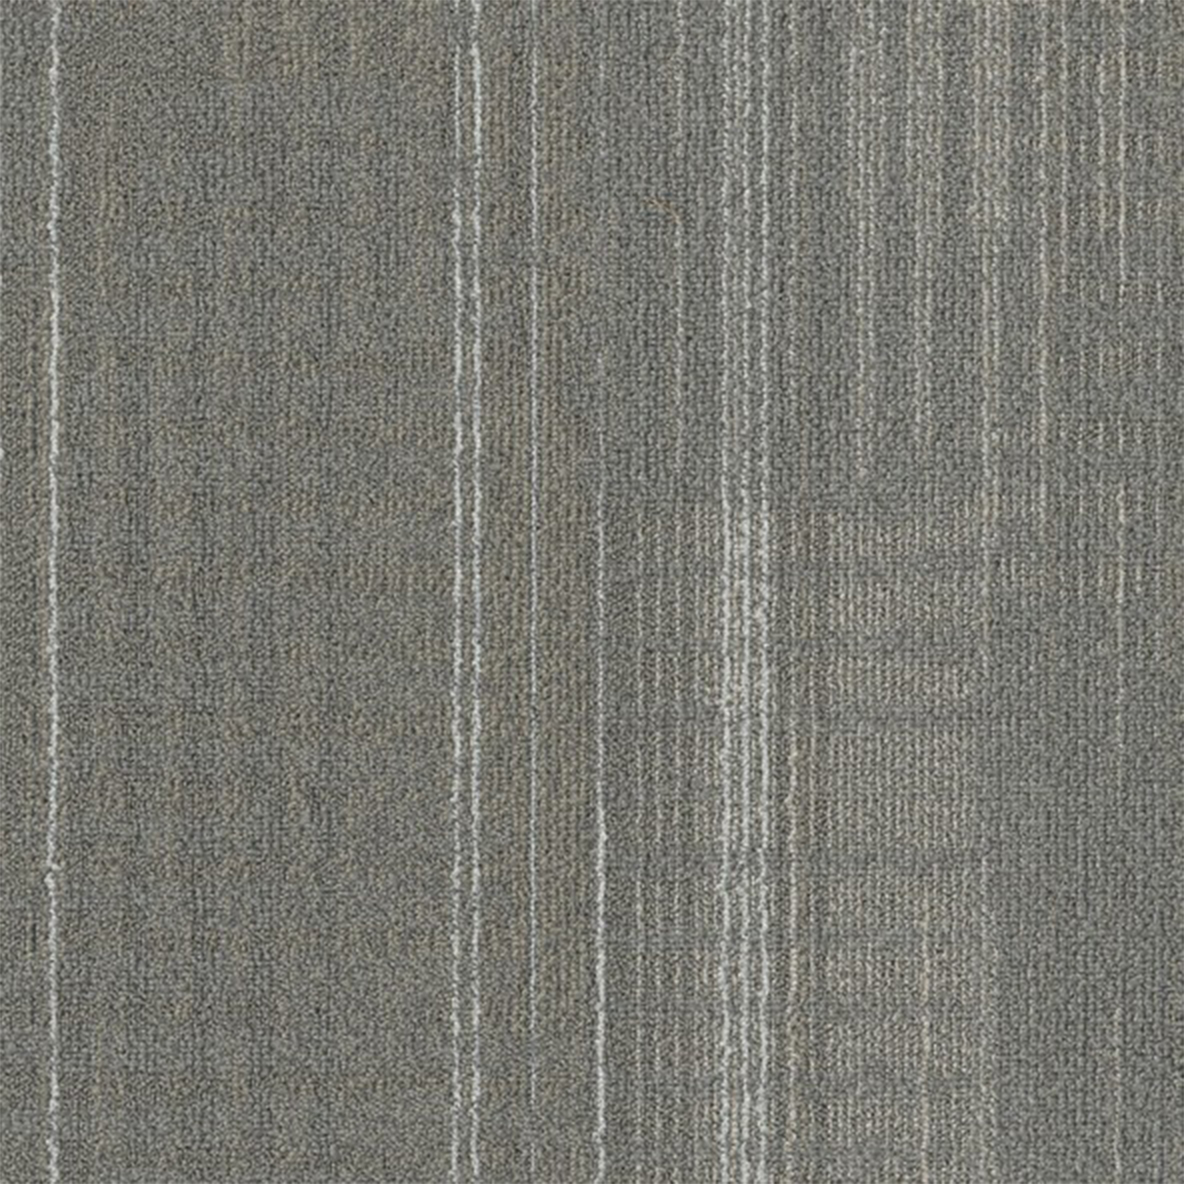 Stone color close up Nexus Commercial Carpet Tile .42 Inch x 50x50 cm per Tile